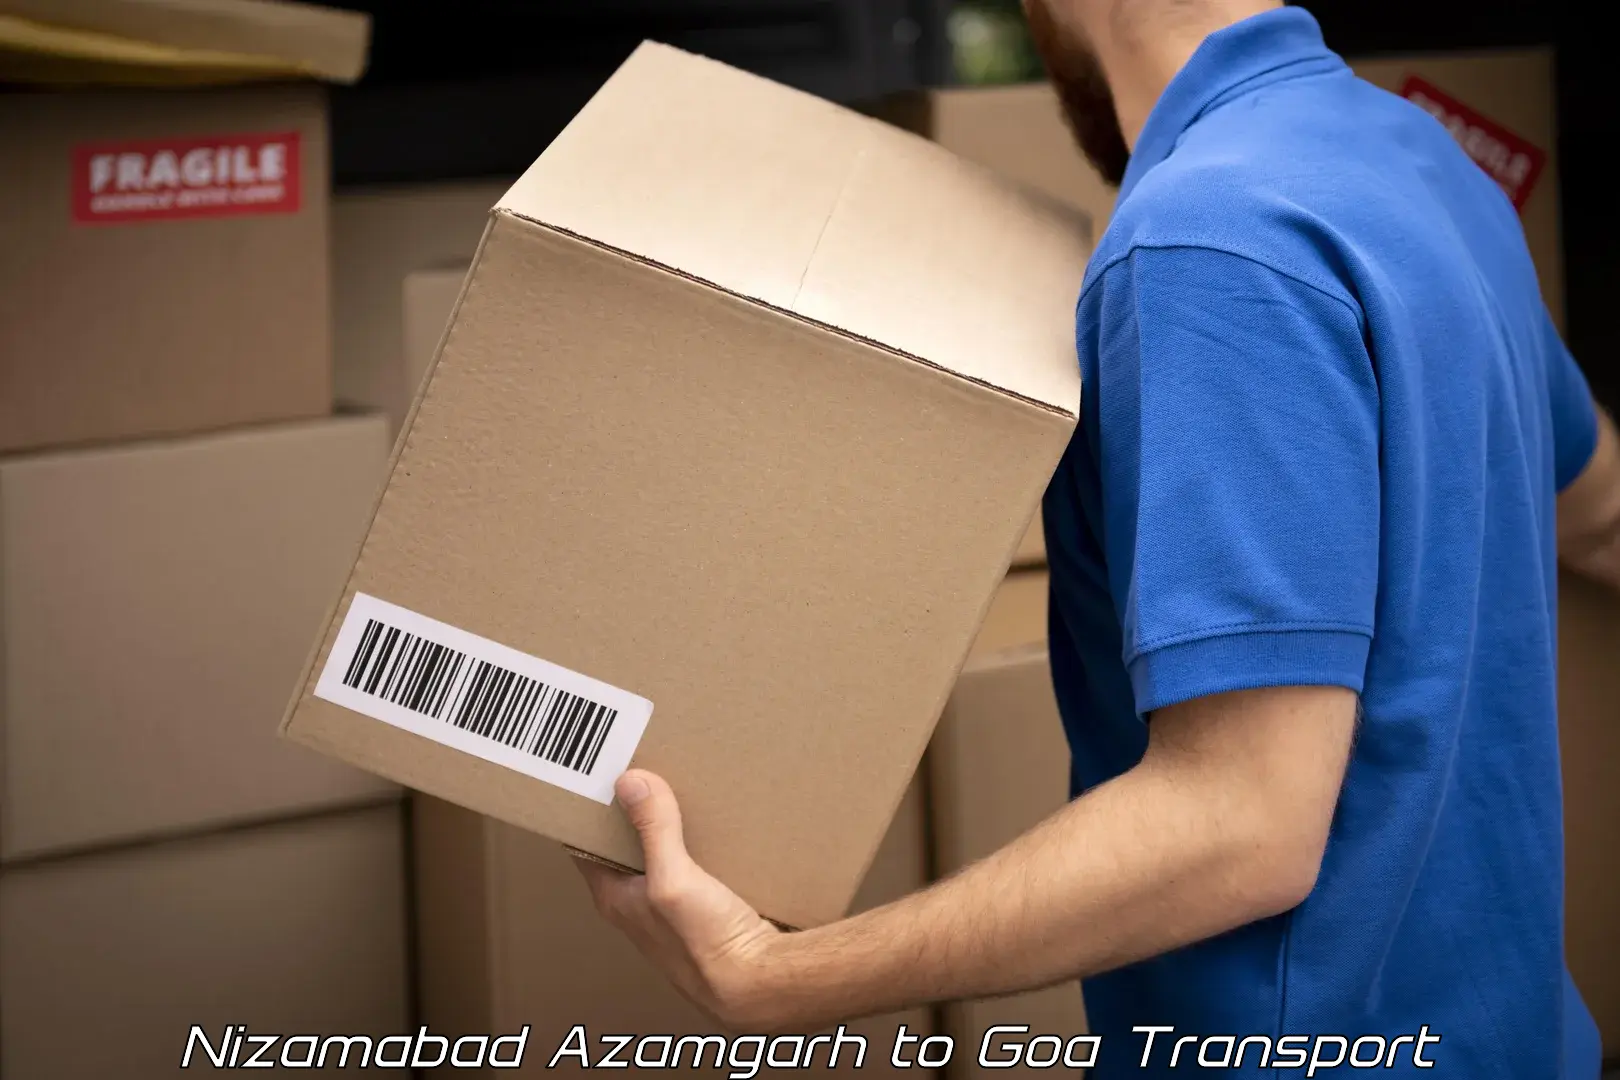 India truck logistics services Nizamabad Azamgarh to IIT Goa